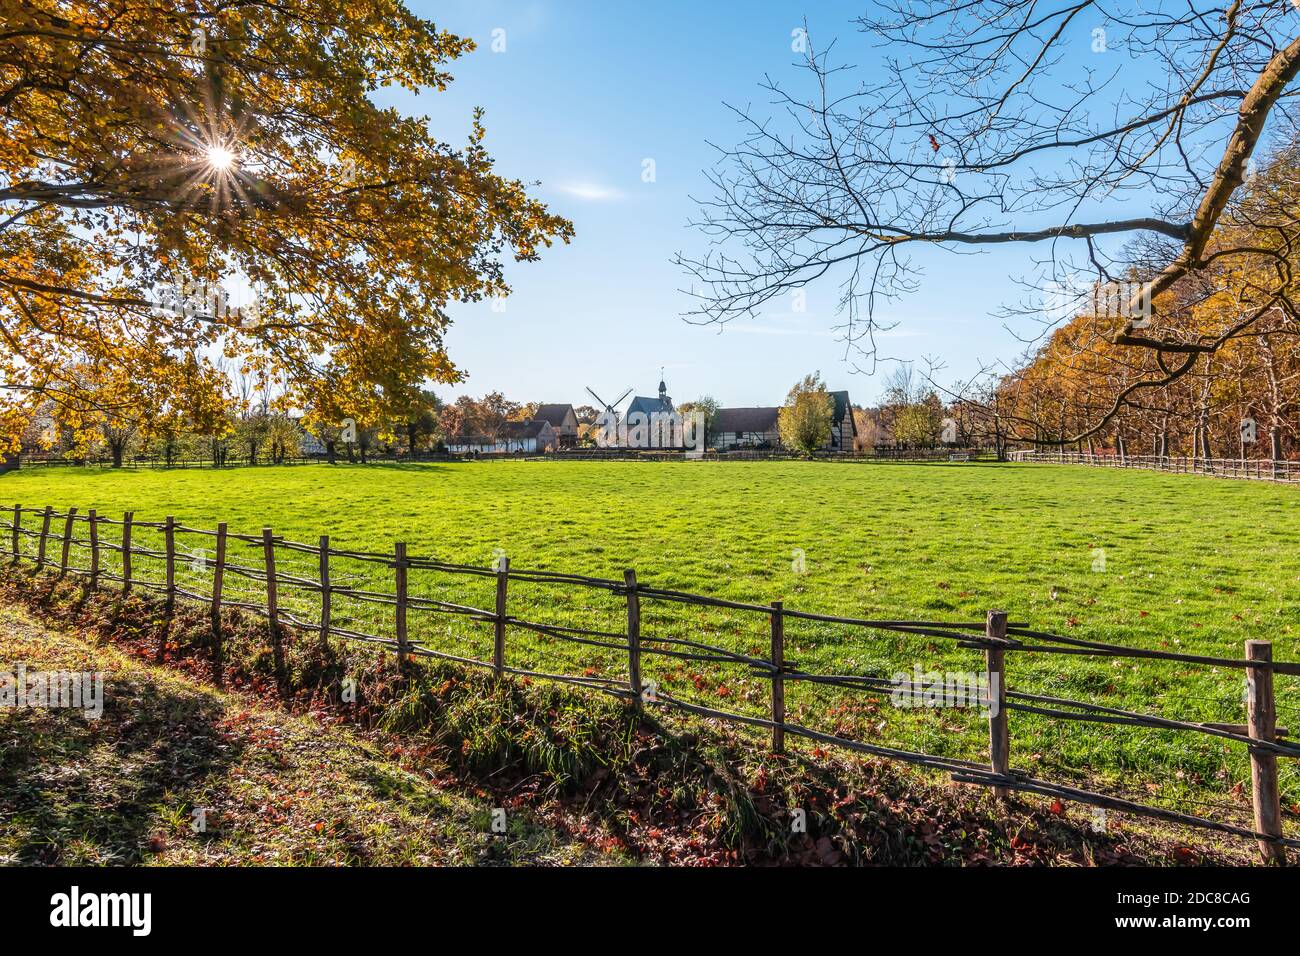 Magnifique parc rural avec prairie entourée de clôtures en bois et soleil à travers l'arbre d'automne. Bokrijk, Belgique. Banque D'Images